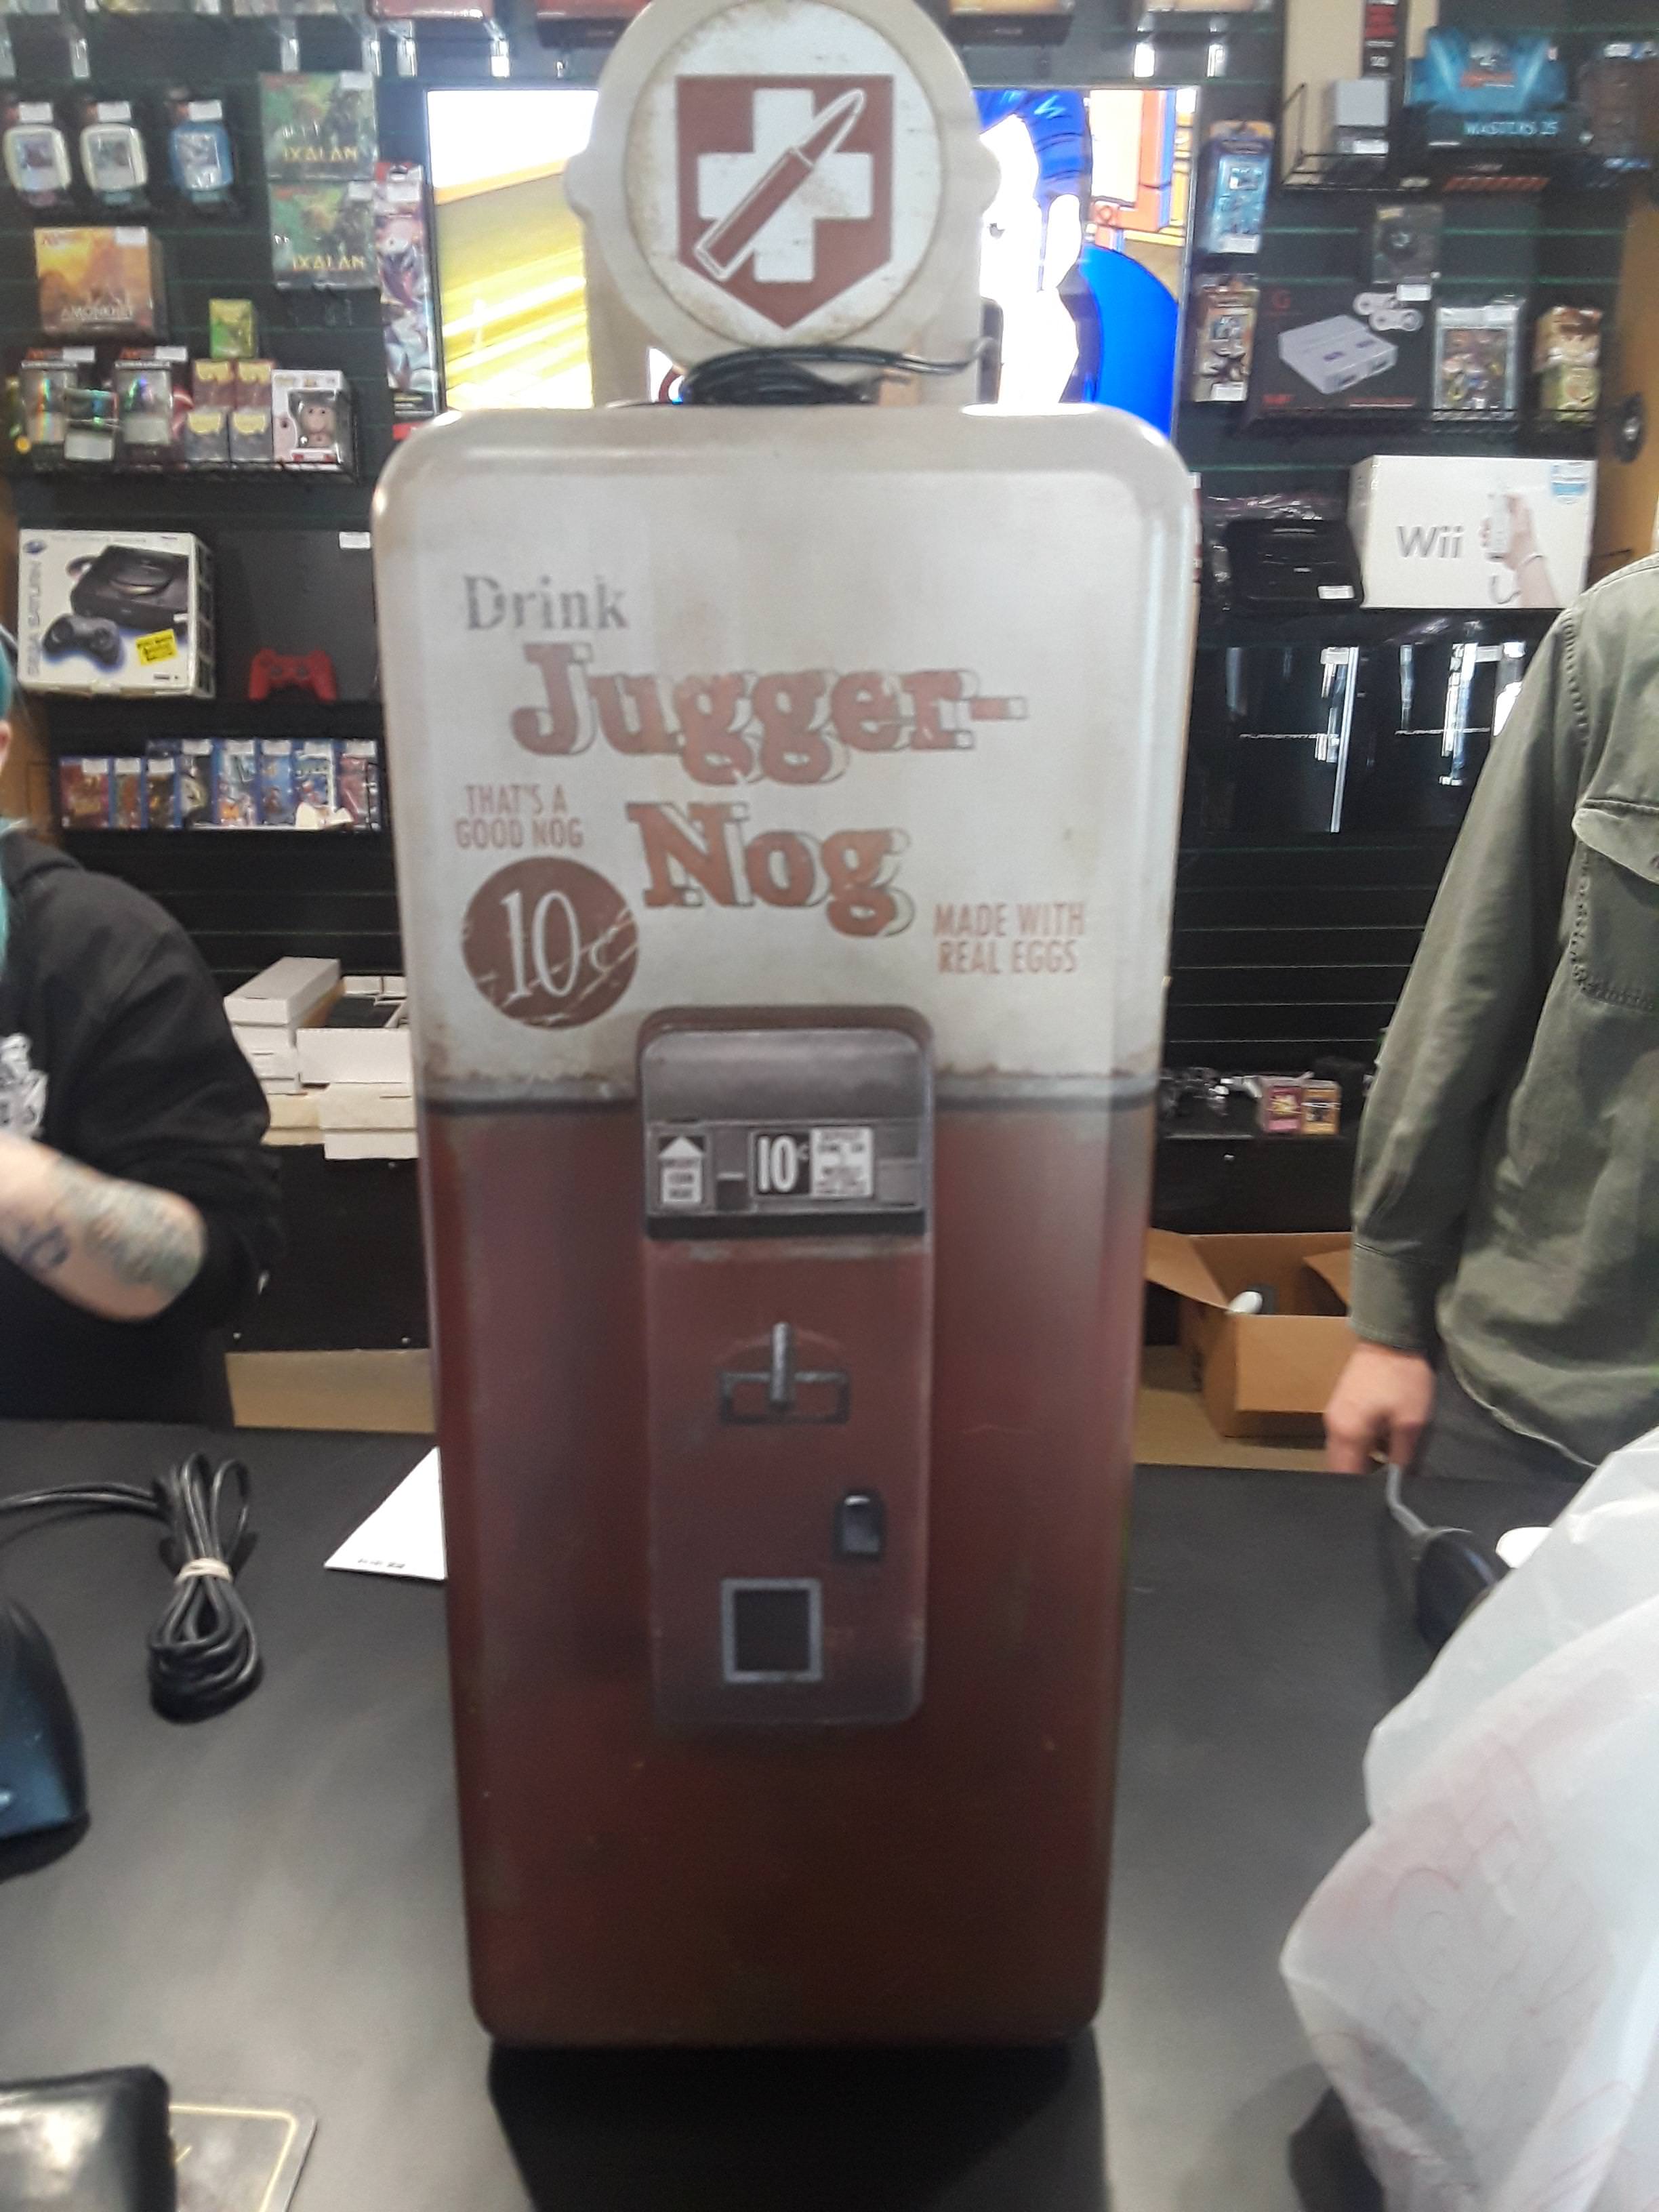 machine - Drink Jugger Nog Ve 10